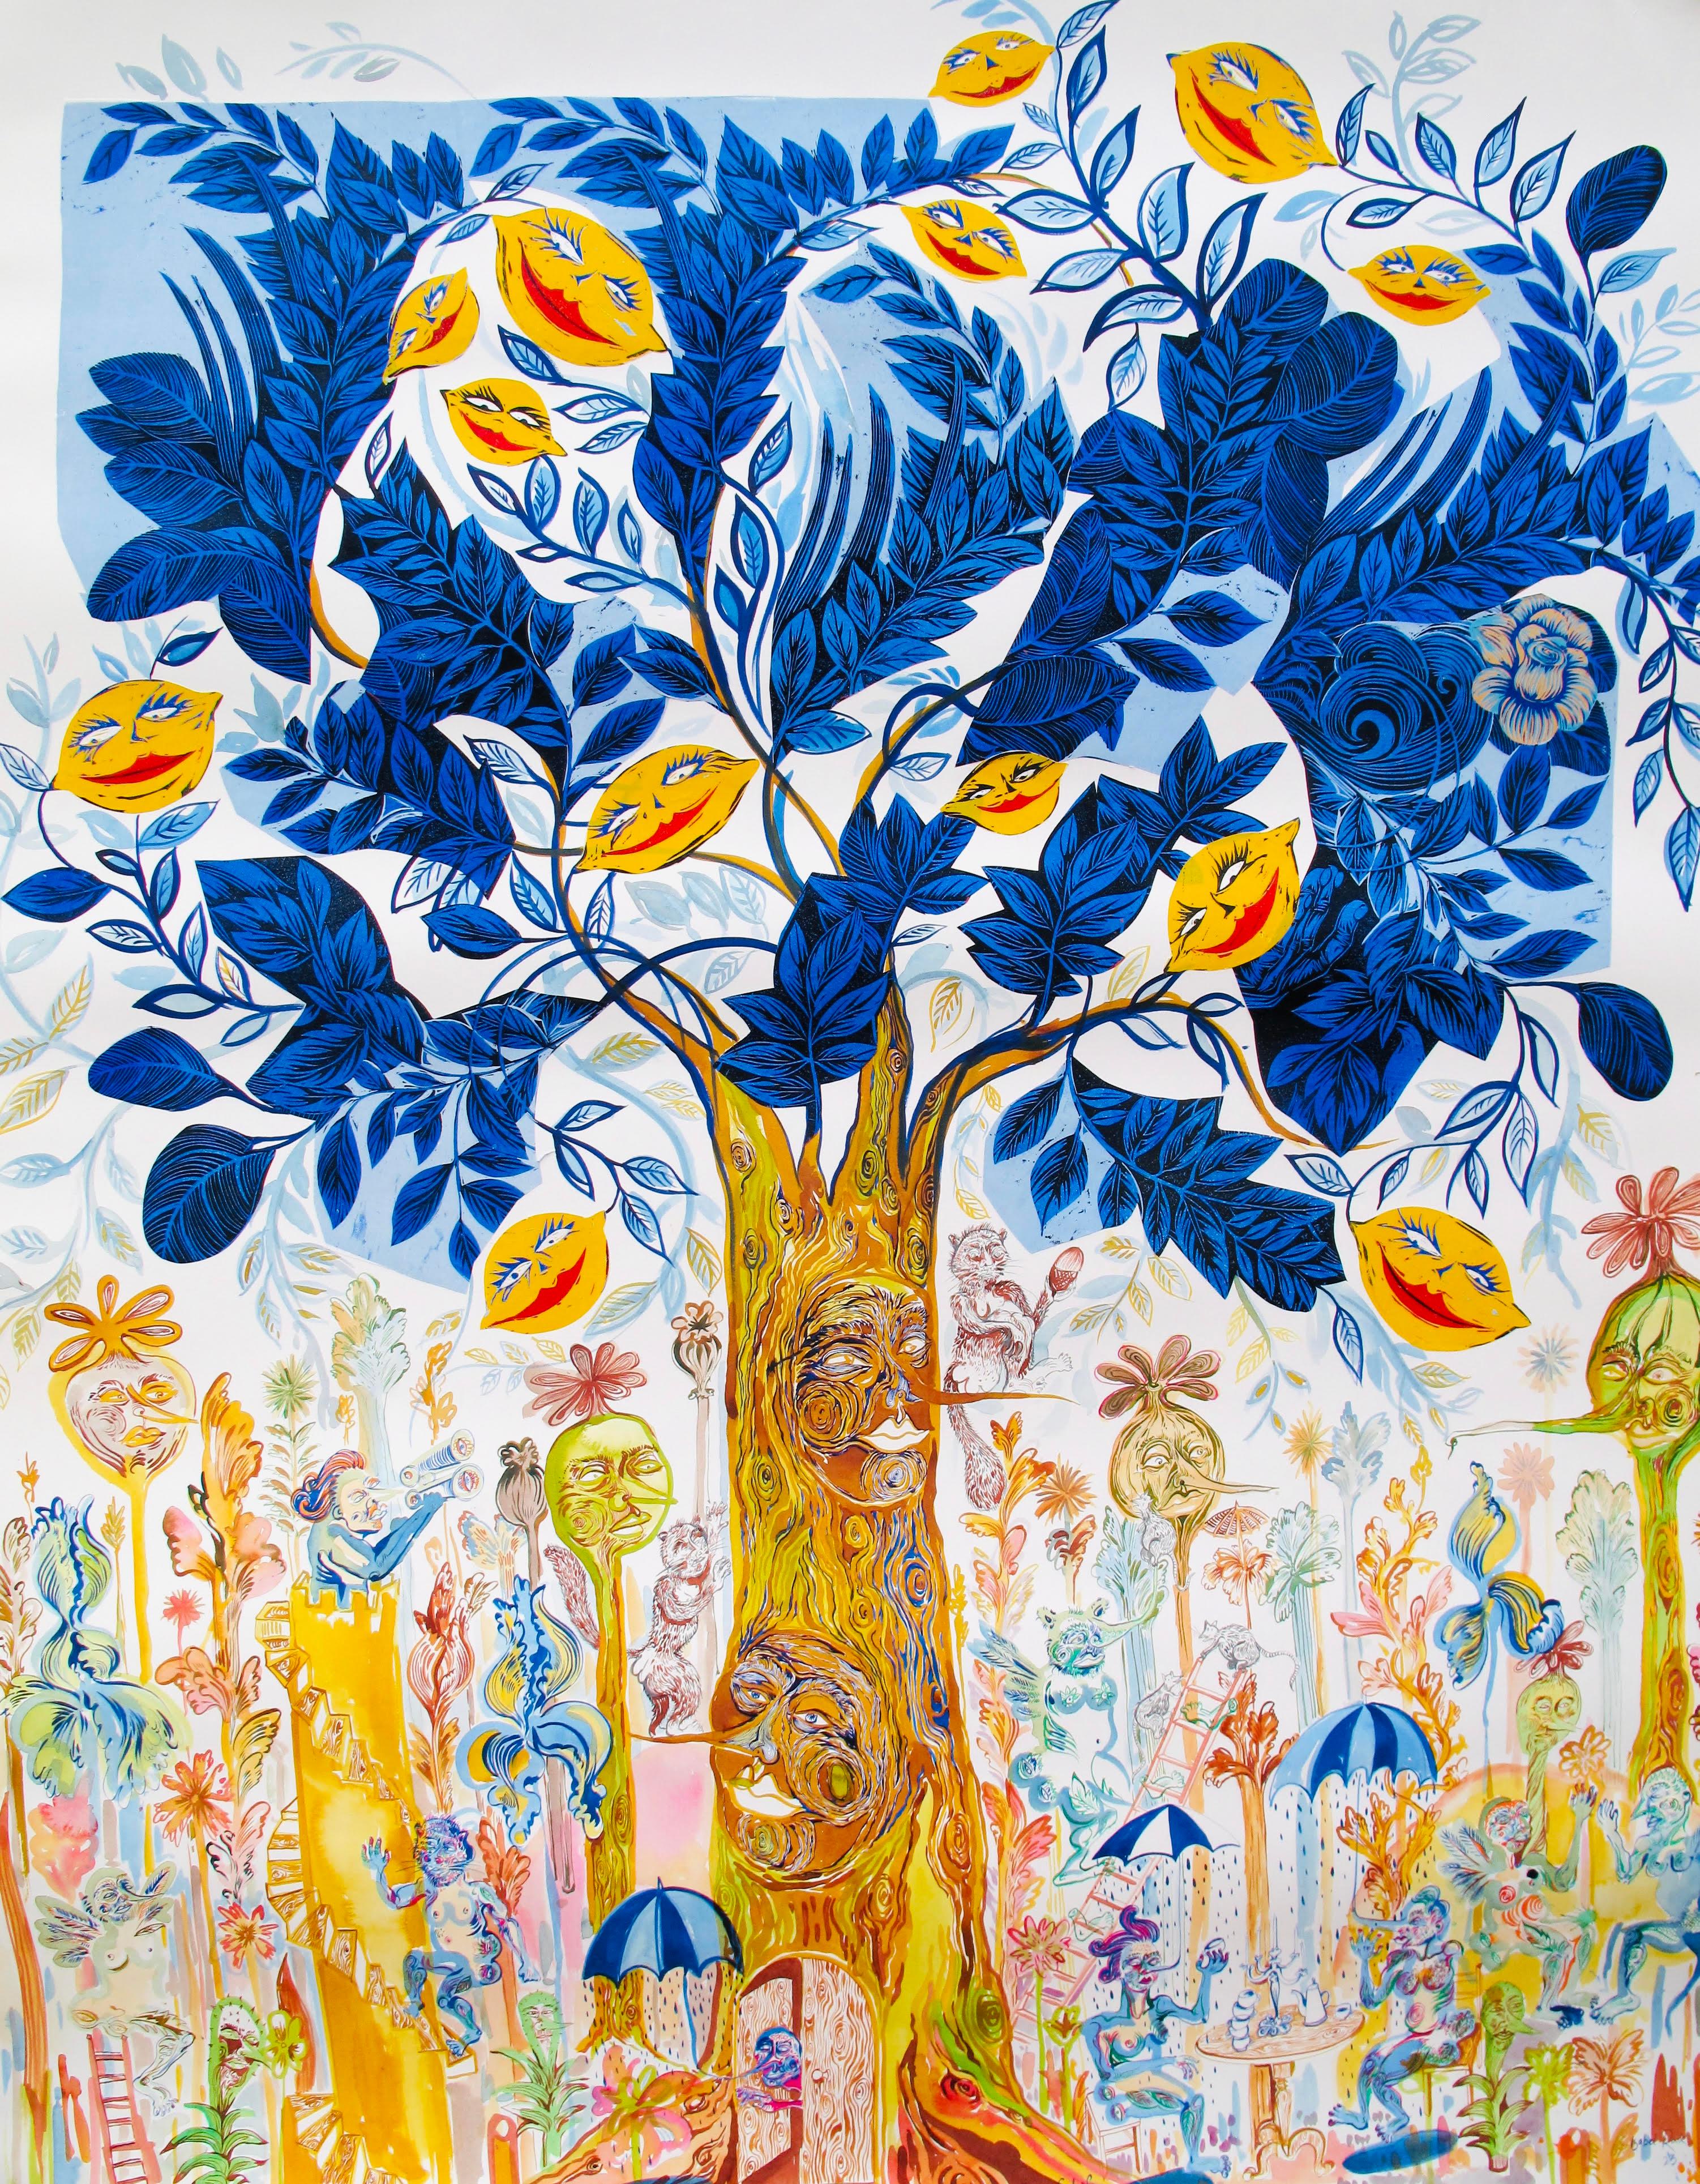 Surrealistisches großes Gemälde, Royal College of Art LGBTQ+, weiblicher Baum des Lebens, blau